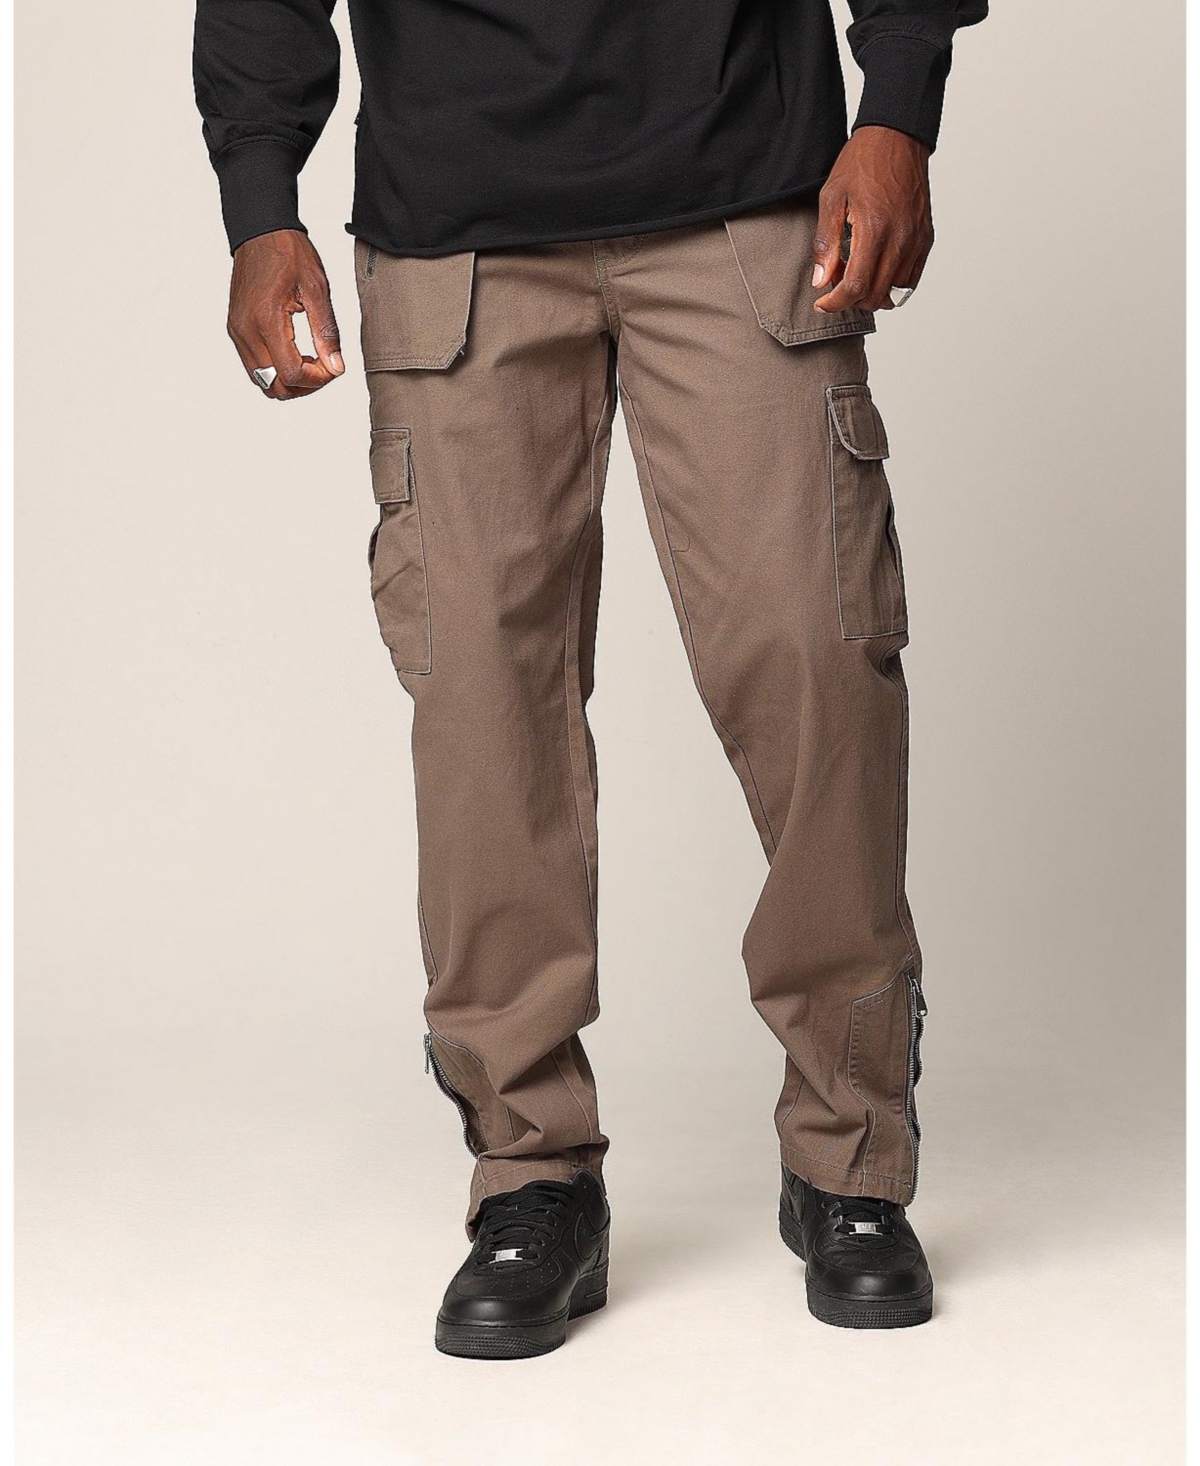 Men's Martial Law Cargo Pants - Vintage khaki